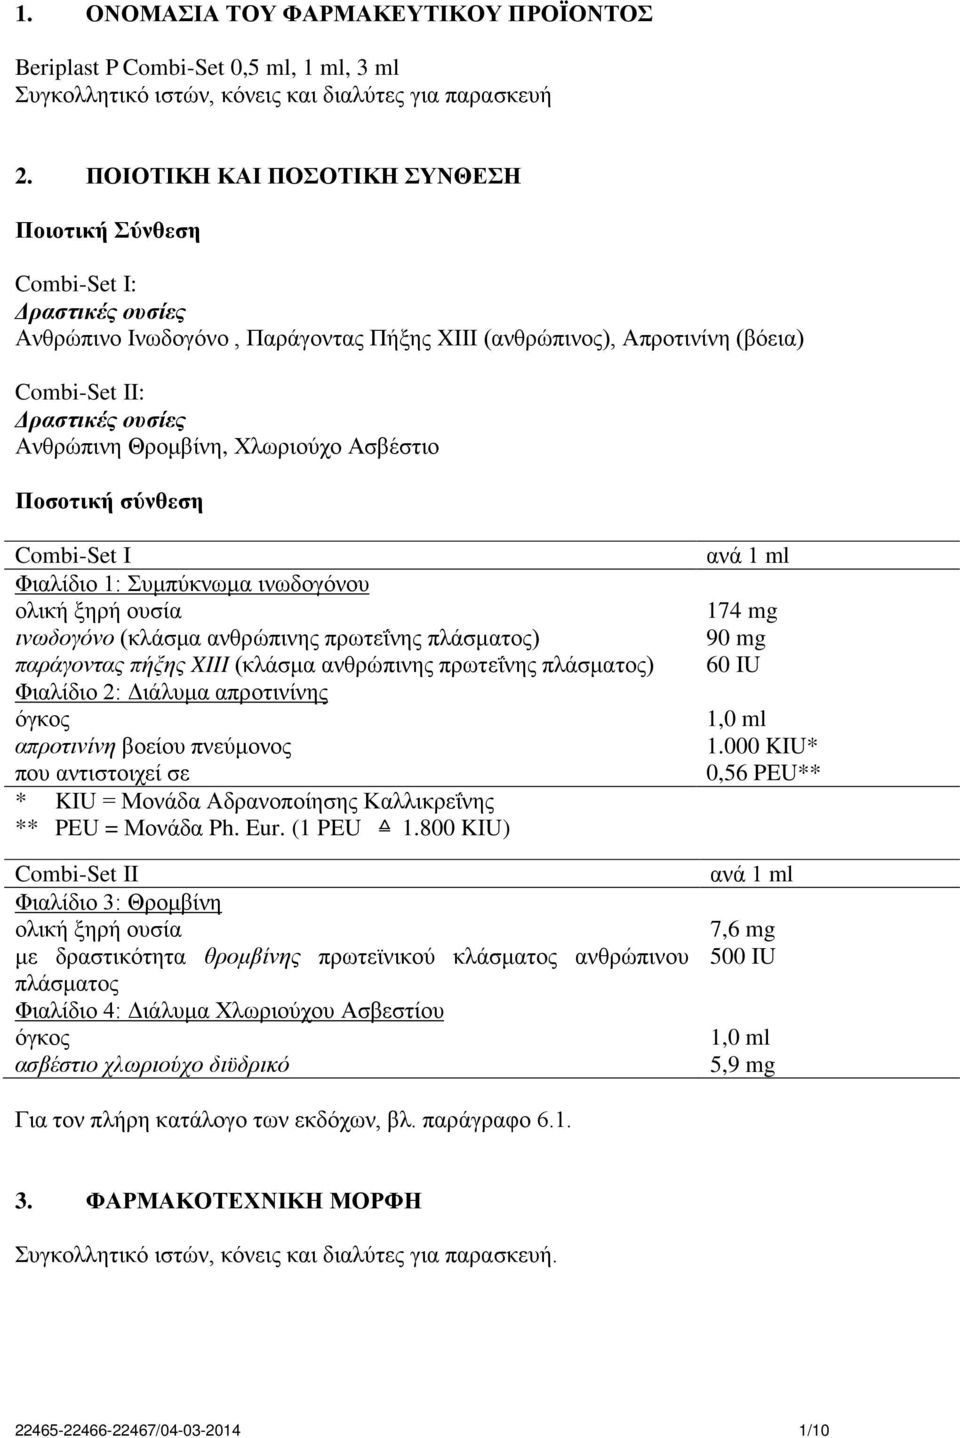 Θρομβίνη, Χλωριούχο Ασβέστιο Ποσοτική σύνθεση Combi-Set I Φιαλίδιο 1: Συμπύκνωμα ινωδογόνου ολική ξηρή ουσία ινωδογόνο (κλάσμα ανθρώπινης πρωτεΐνης πλάσματος) παράγοντας πήξης XIII (κλάσμα ανθρώπινης